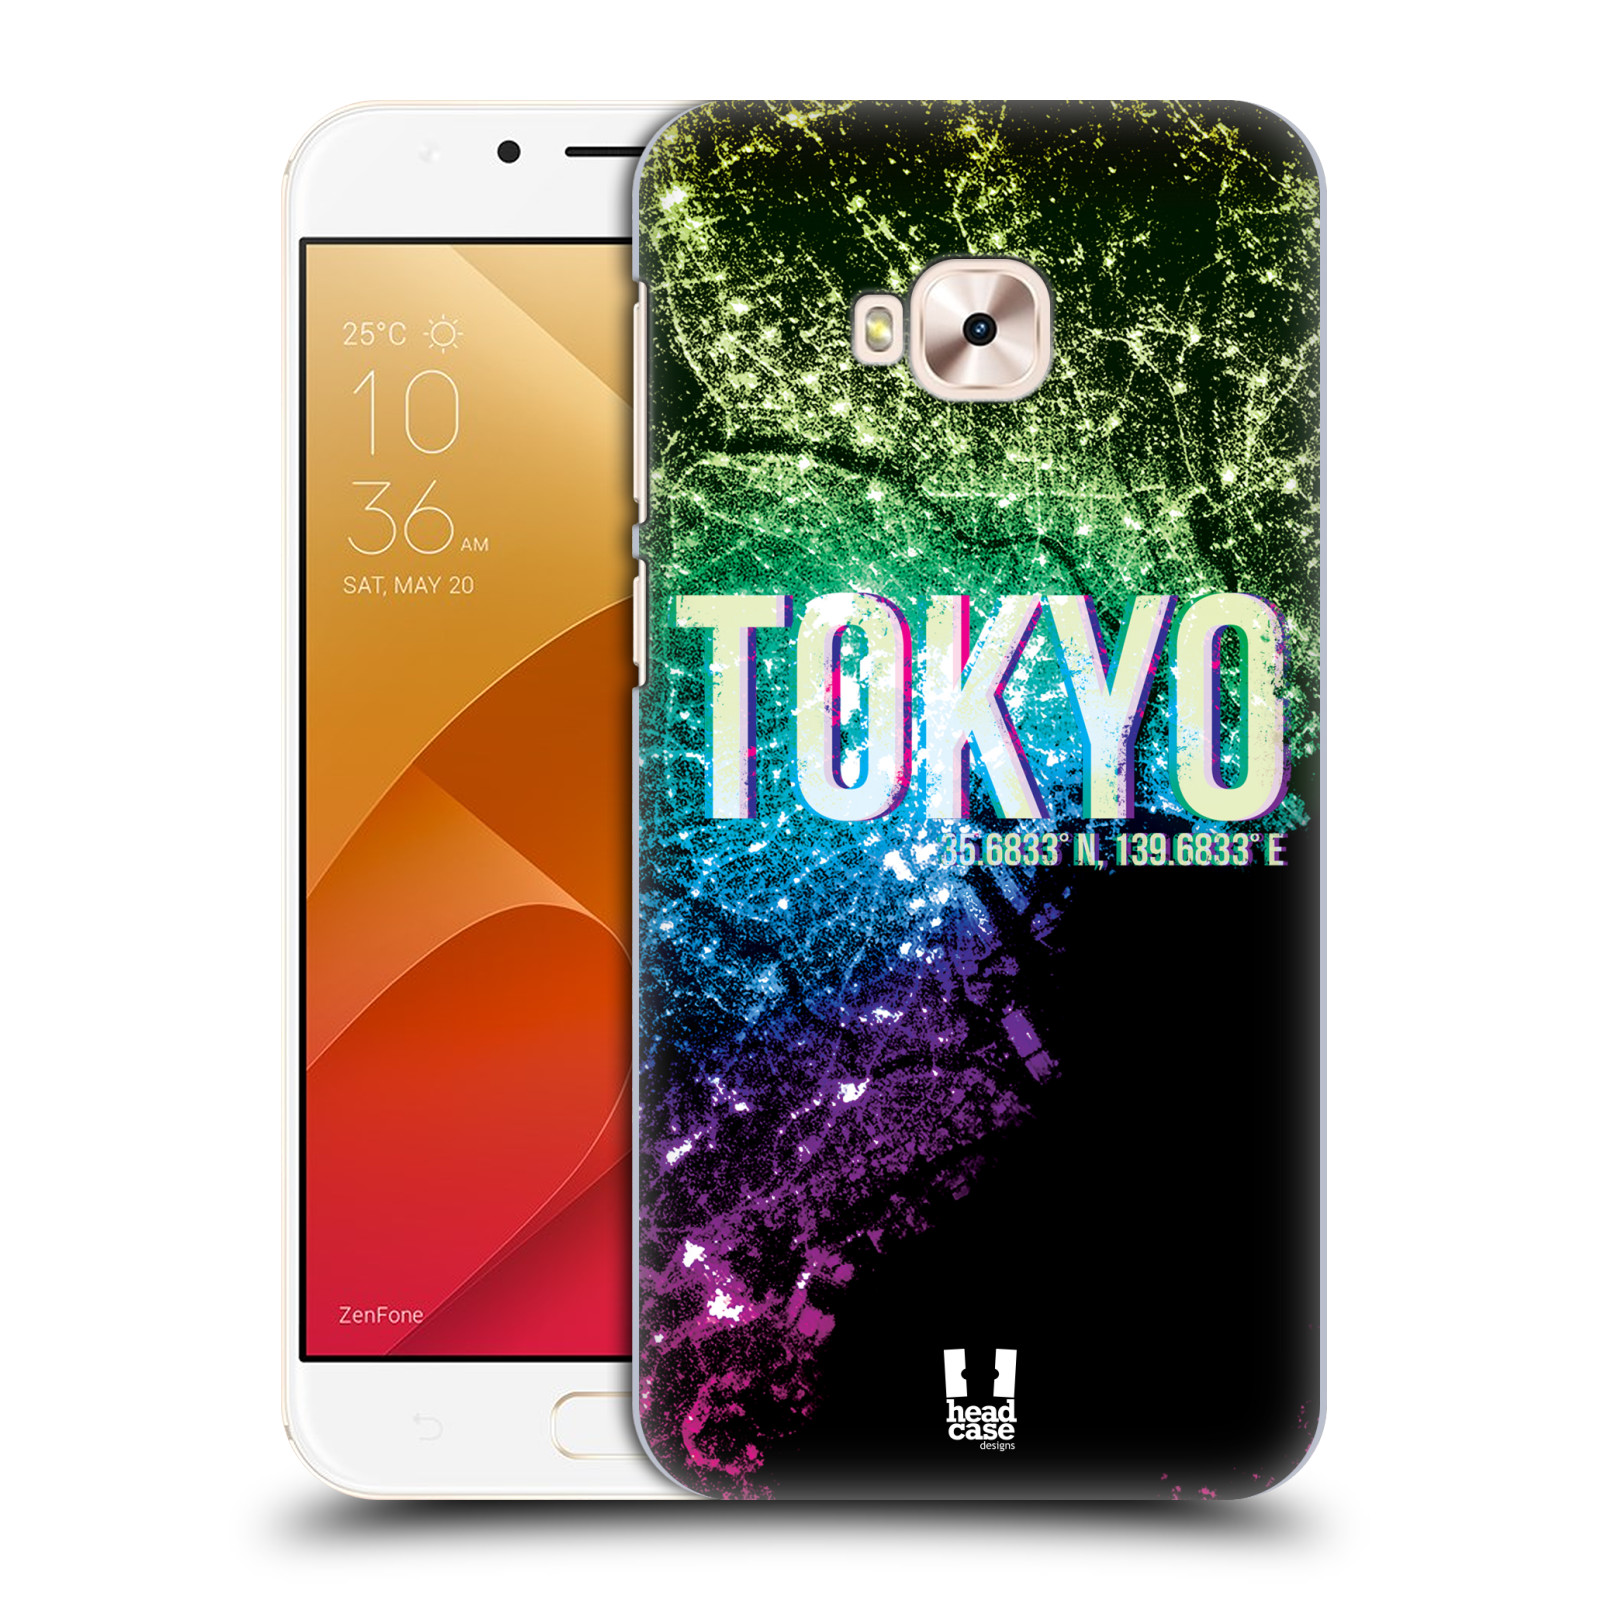 HEAD CASE plastový obal na mobil Asus Zenfone 4 Selfie Pro ZD552KL vzor Světla známých měst, Satelitní snímky zelená a fialová JAPONSKO, TOKYO